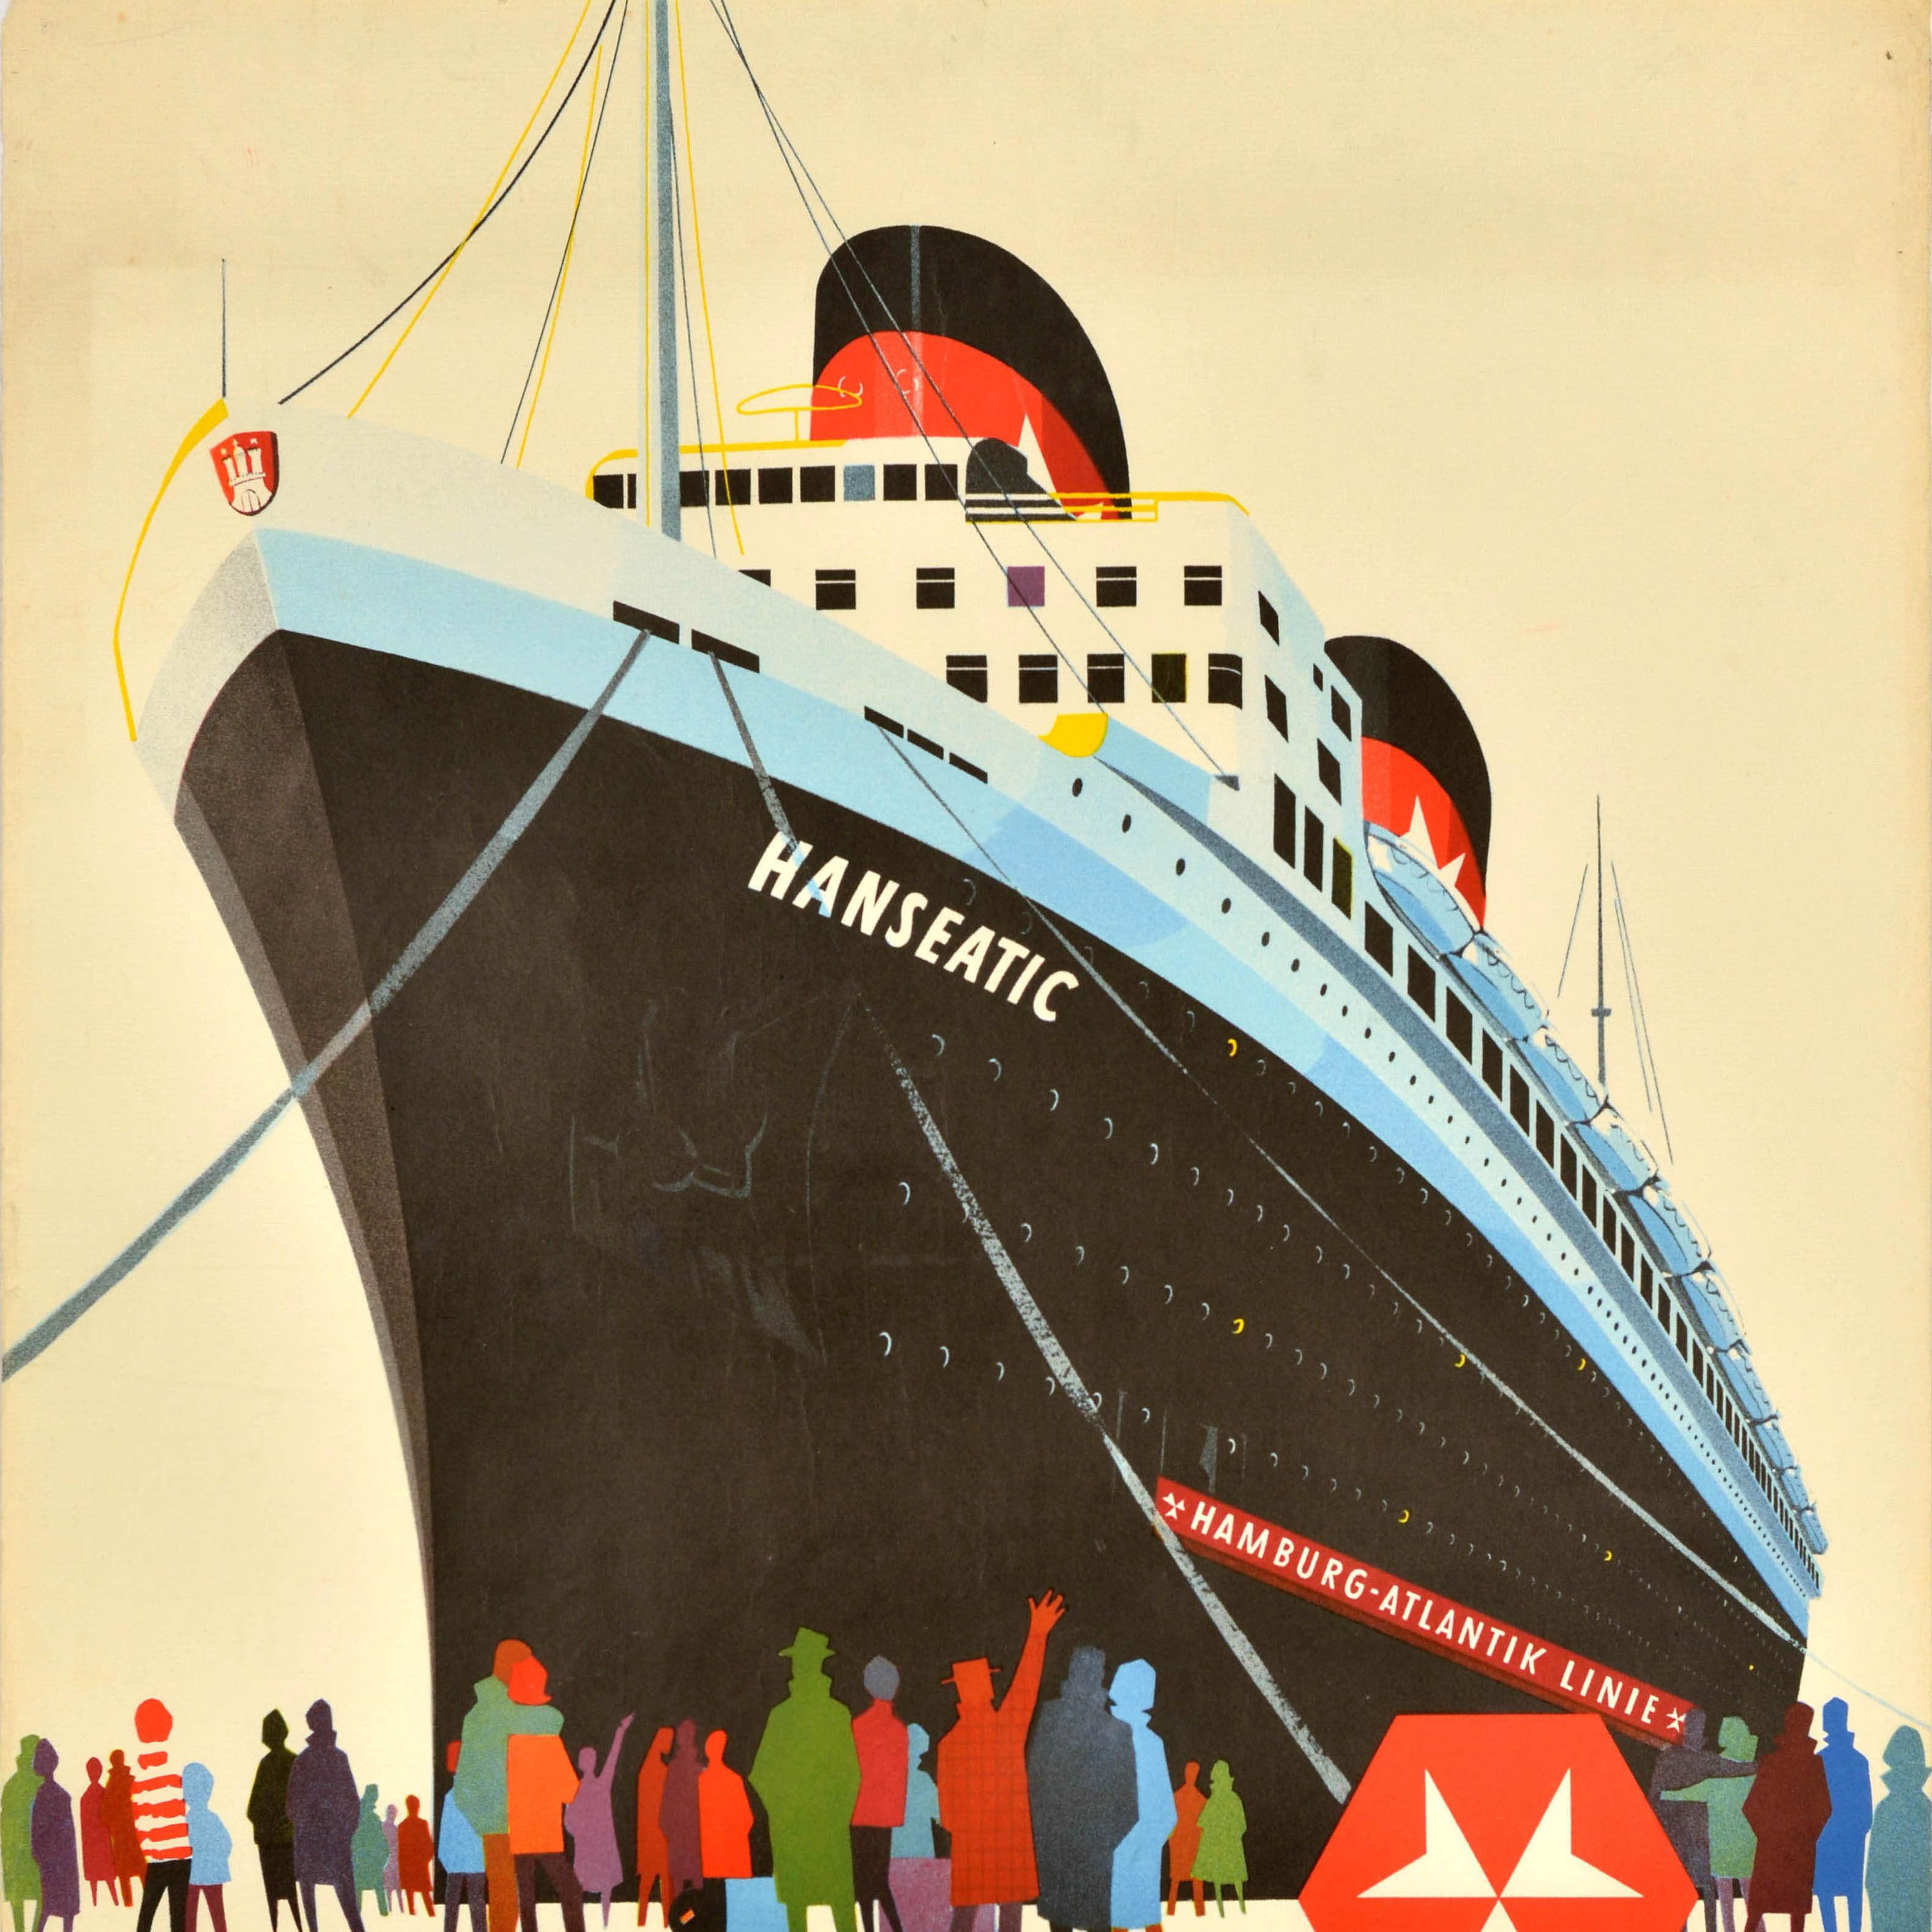 Original-Vintage-Reiseplakat Hamburg Atlantic Line, Hanseatic USA, Kreuzfahrtschiff (Orange), Print, von Unknown